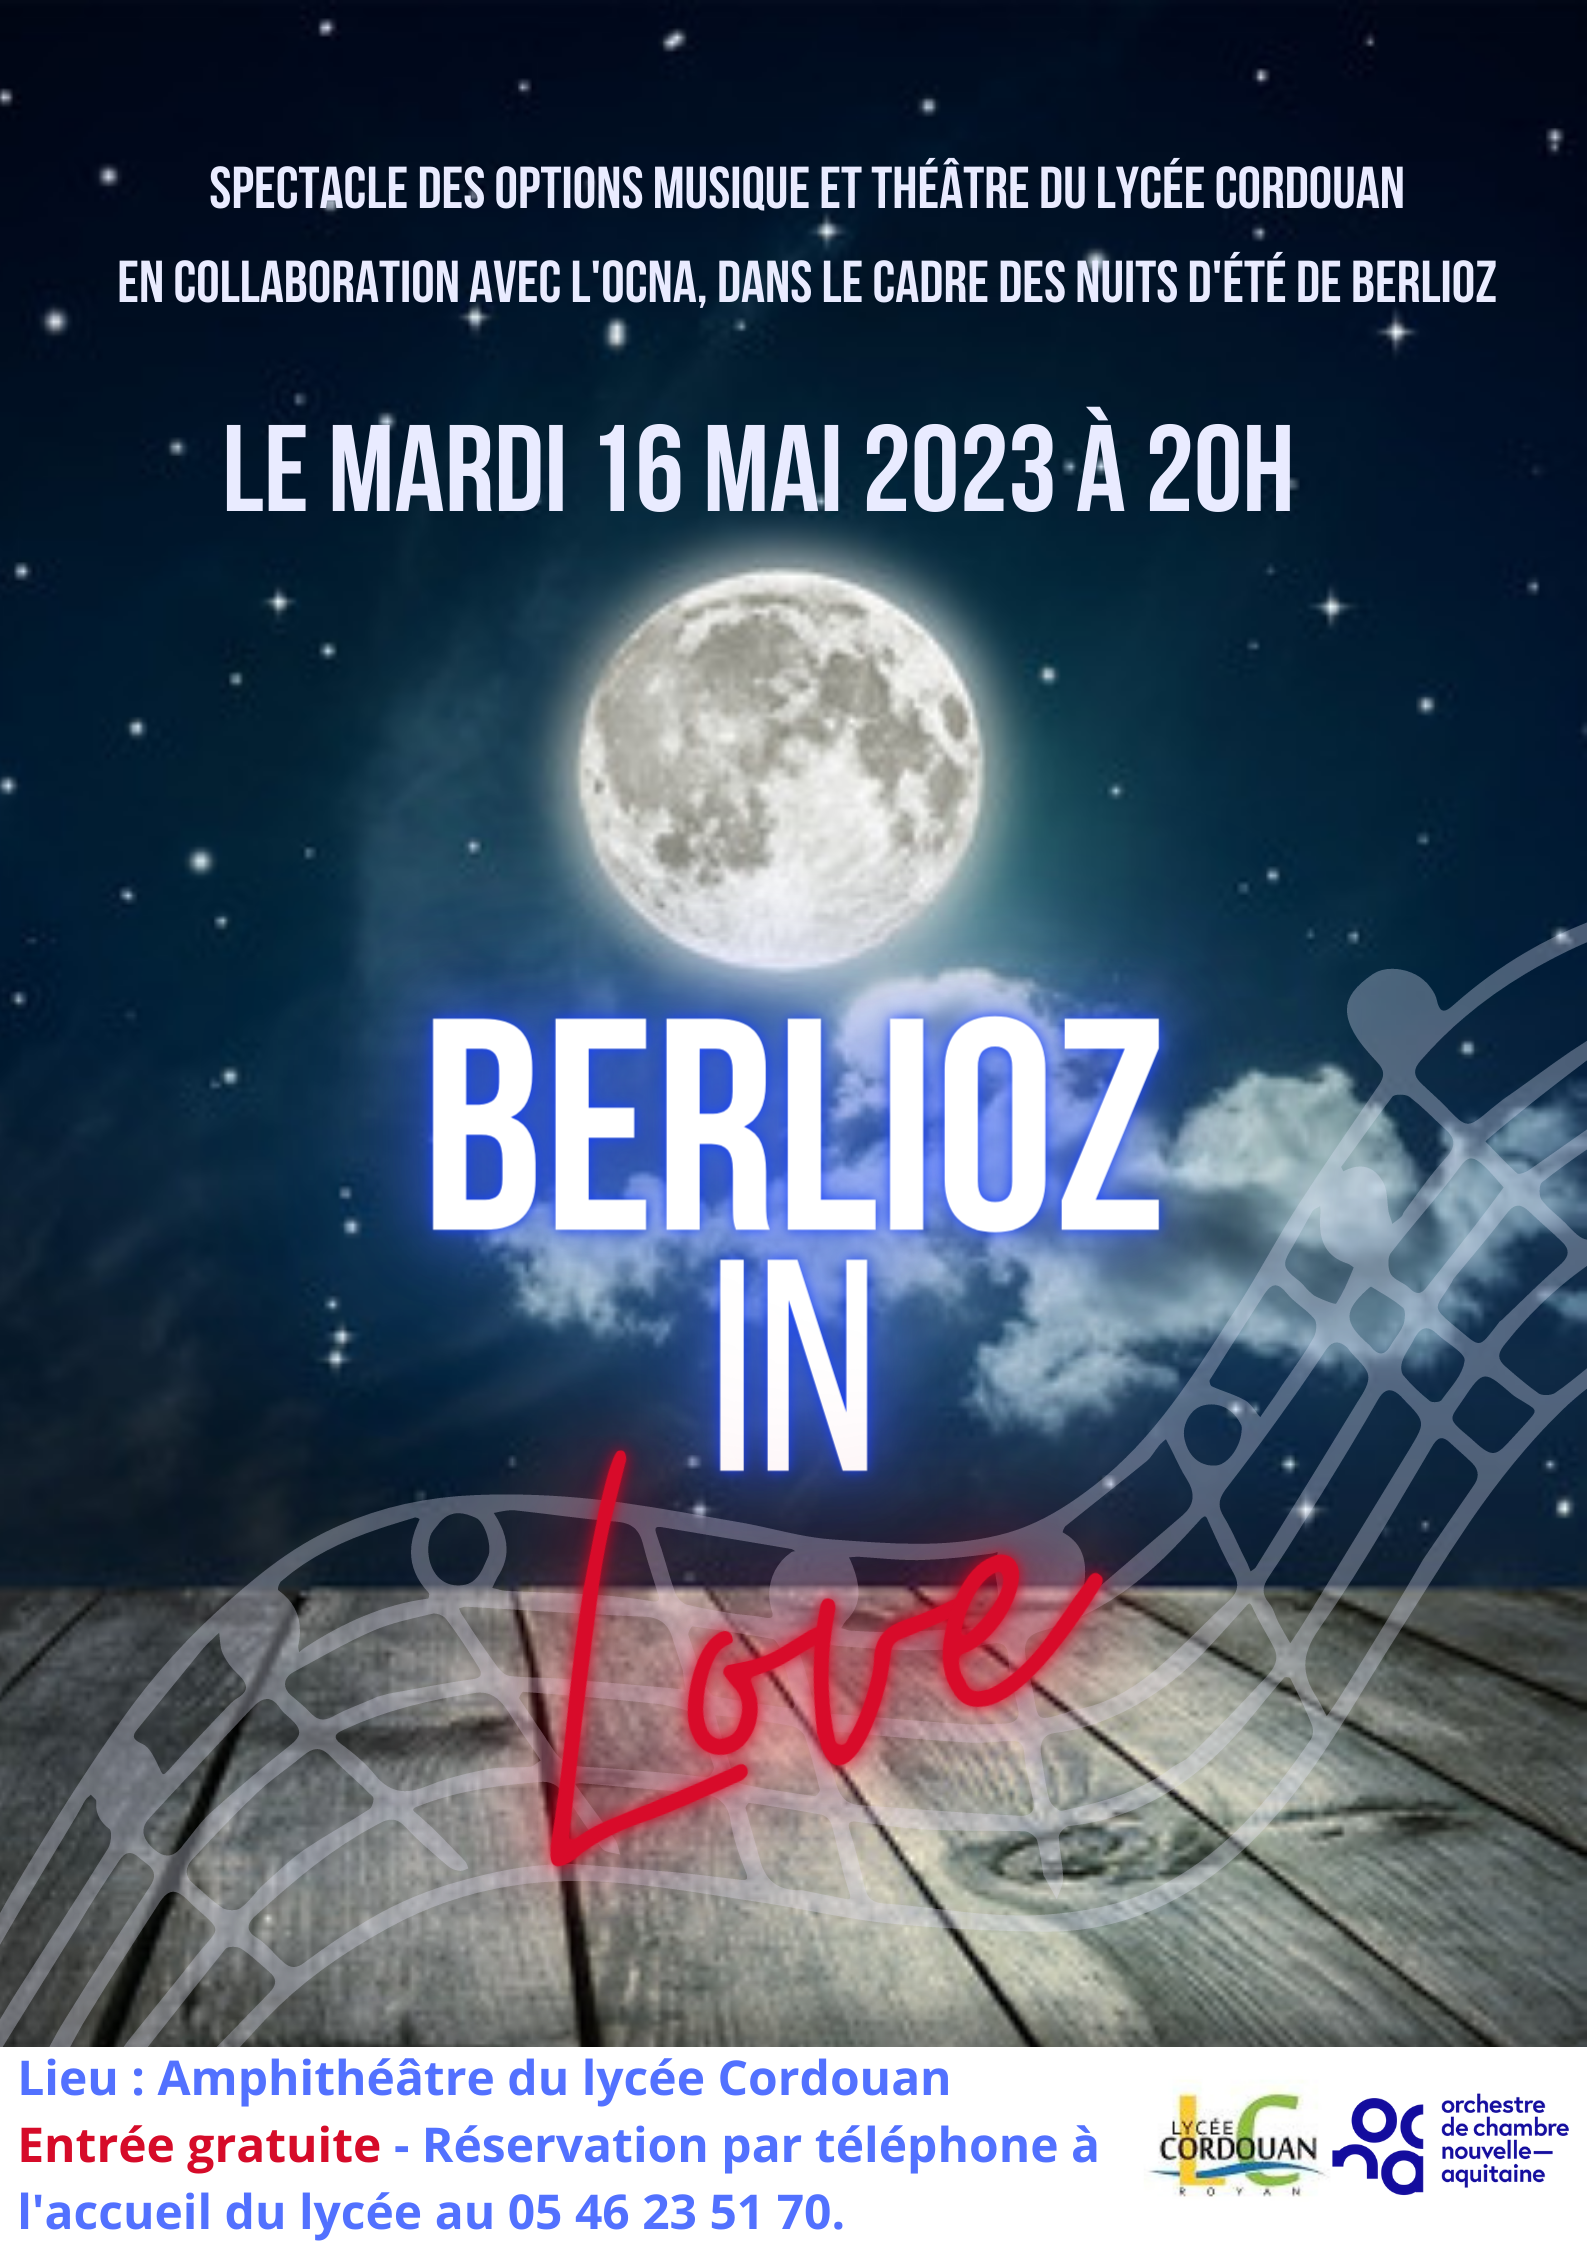 Berlioz in love, spectacle des options musique et théâtre en collaboration avec l’OCNA